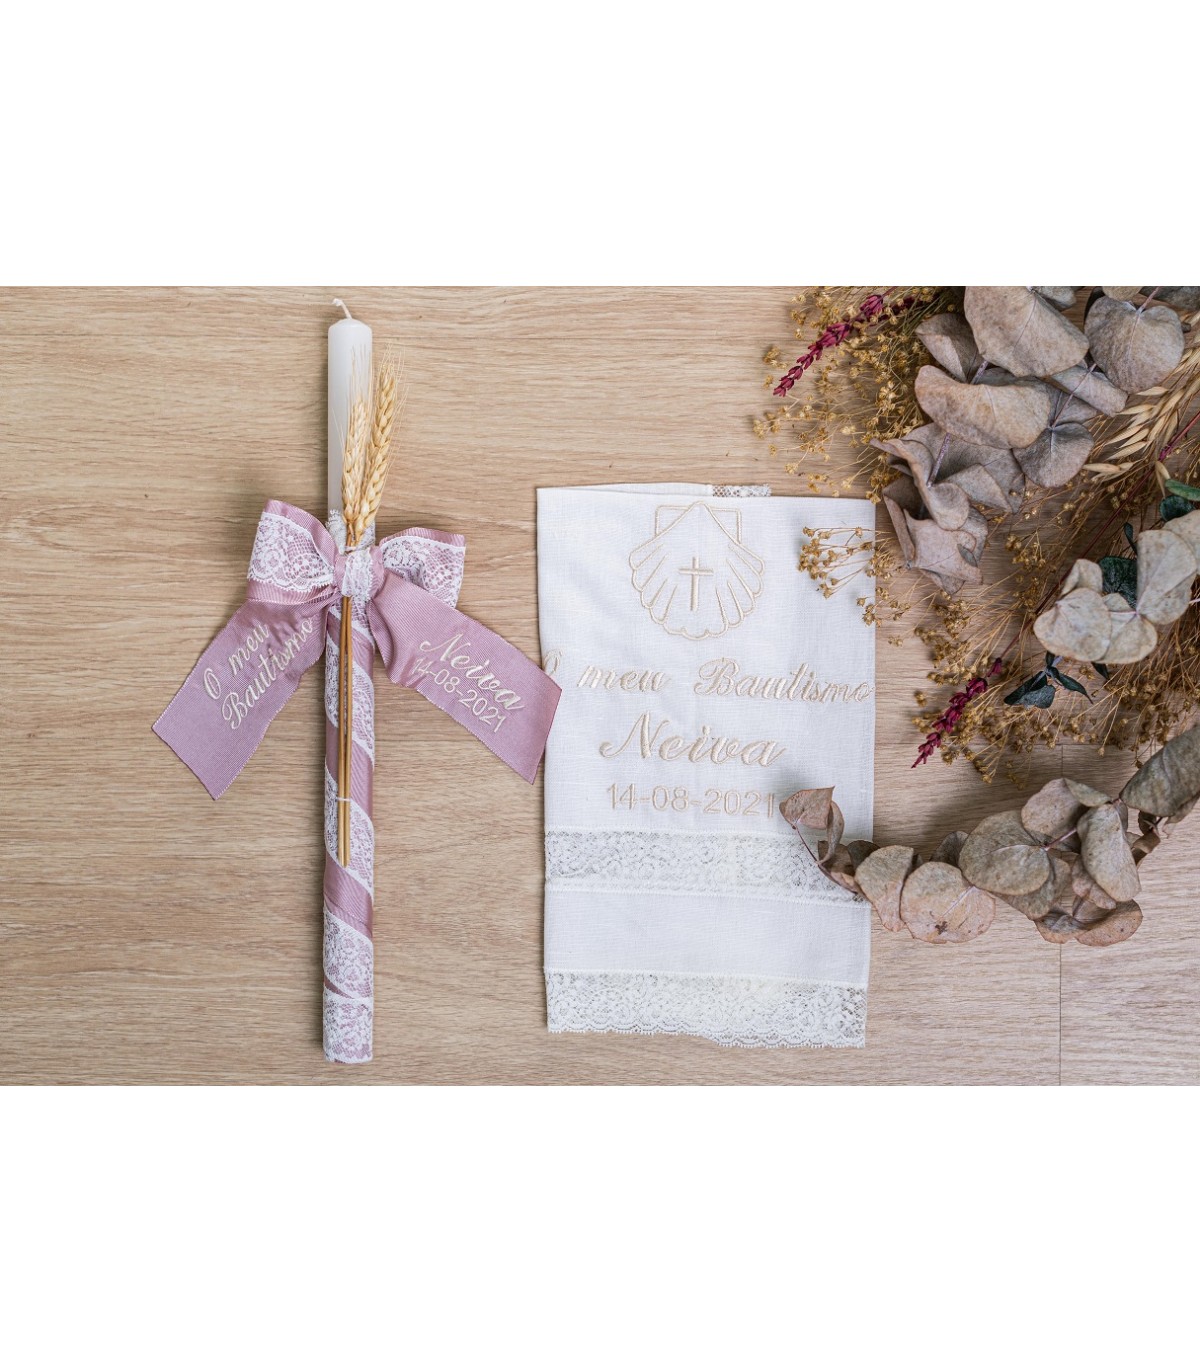 Kit de vela y pañuelo personalizado para bautizo – Pack de vela decorada  para Bautizo y Paño bordado con nombre y fecha del Bautismo - Modelo  Bambula